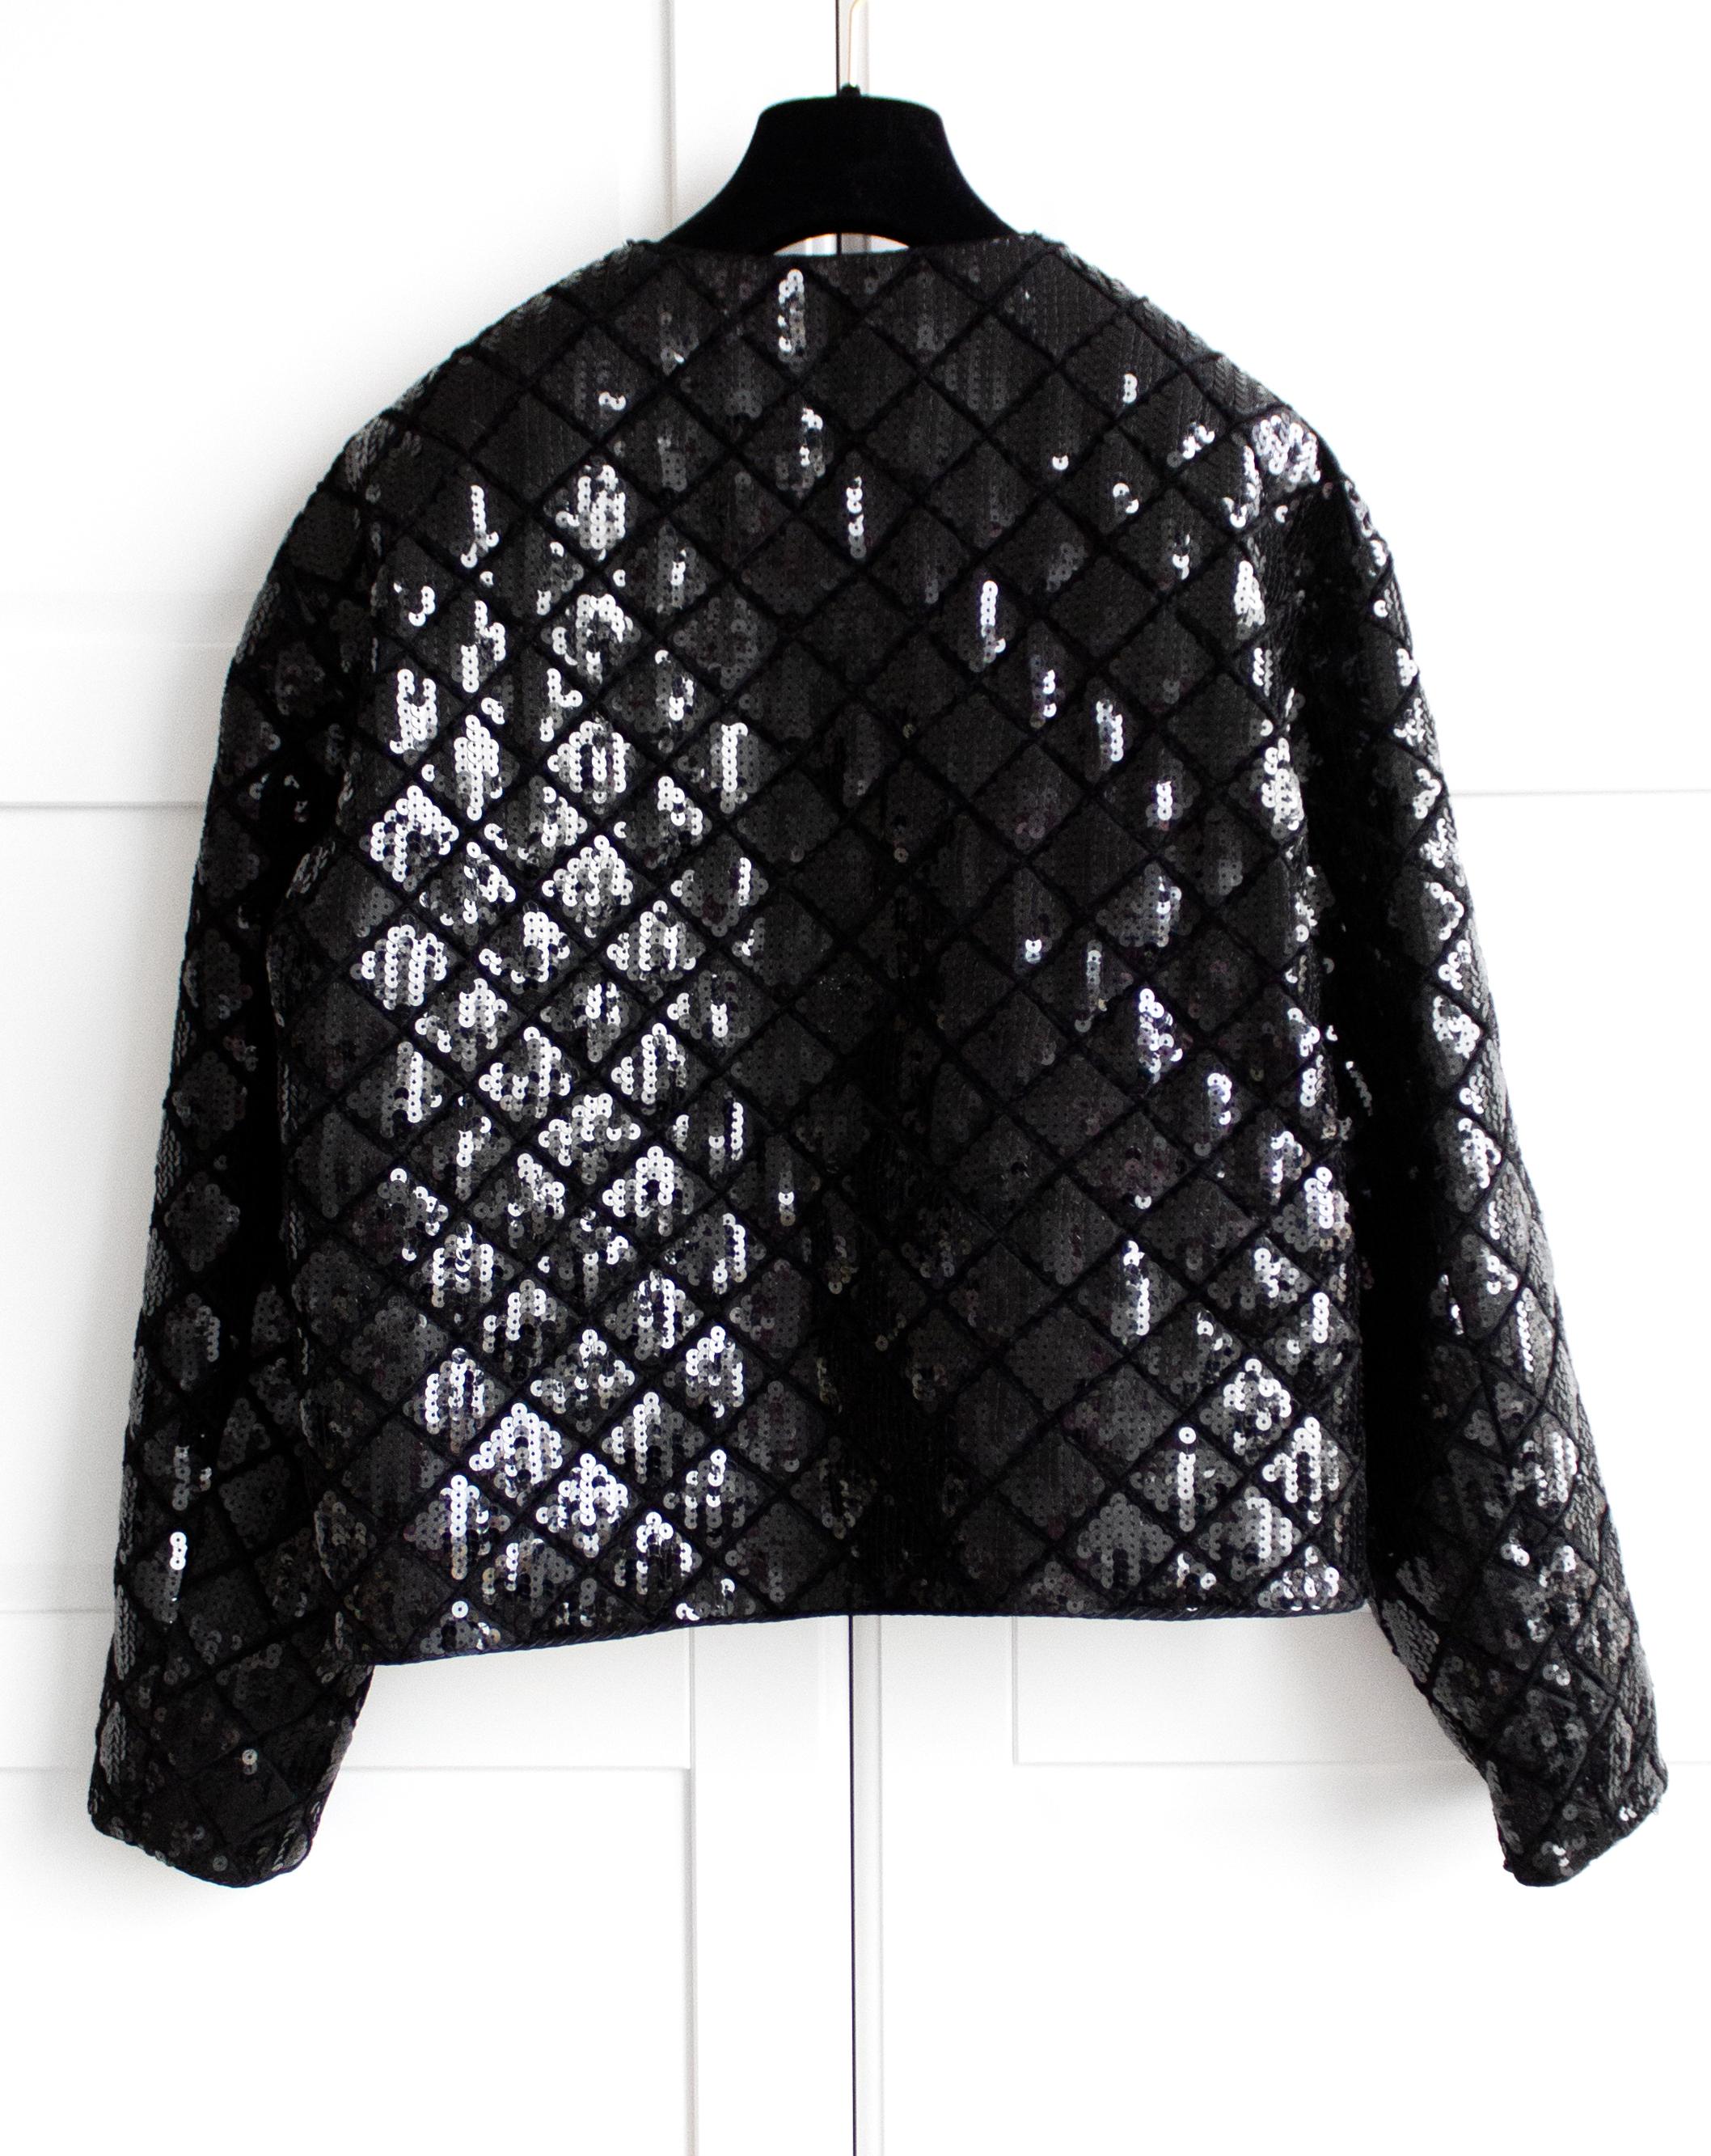 Rare Chanel Vintage S/S 1987 Black Quilted Sequin Embellished Jacket 1